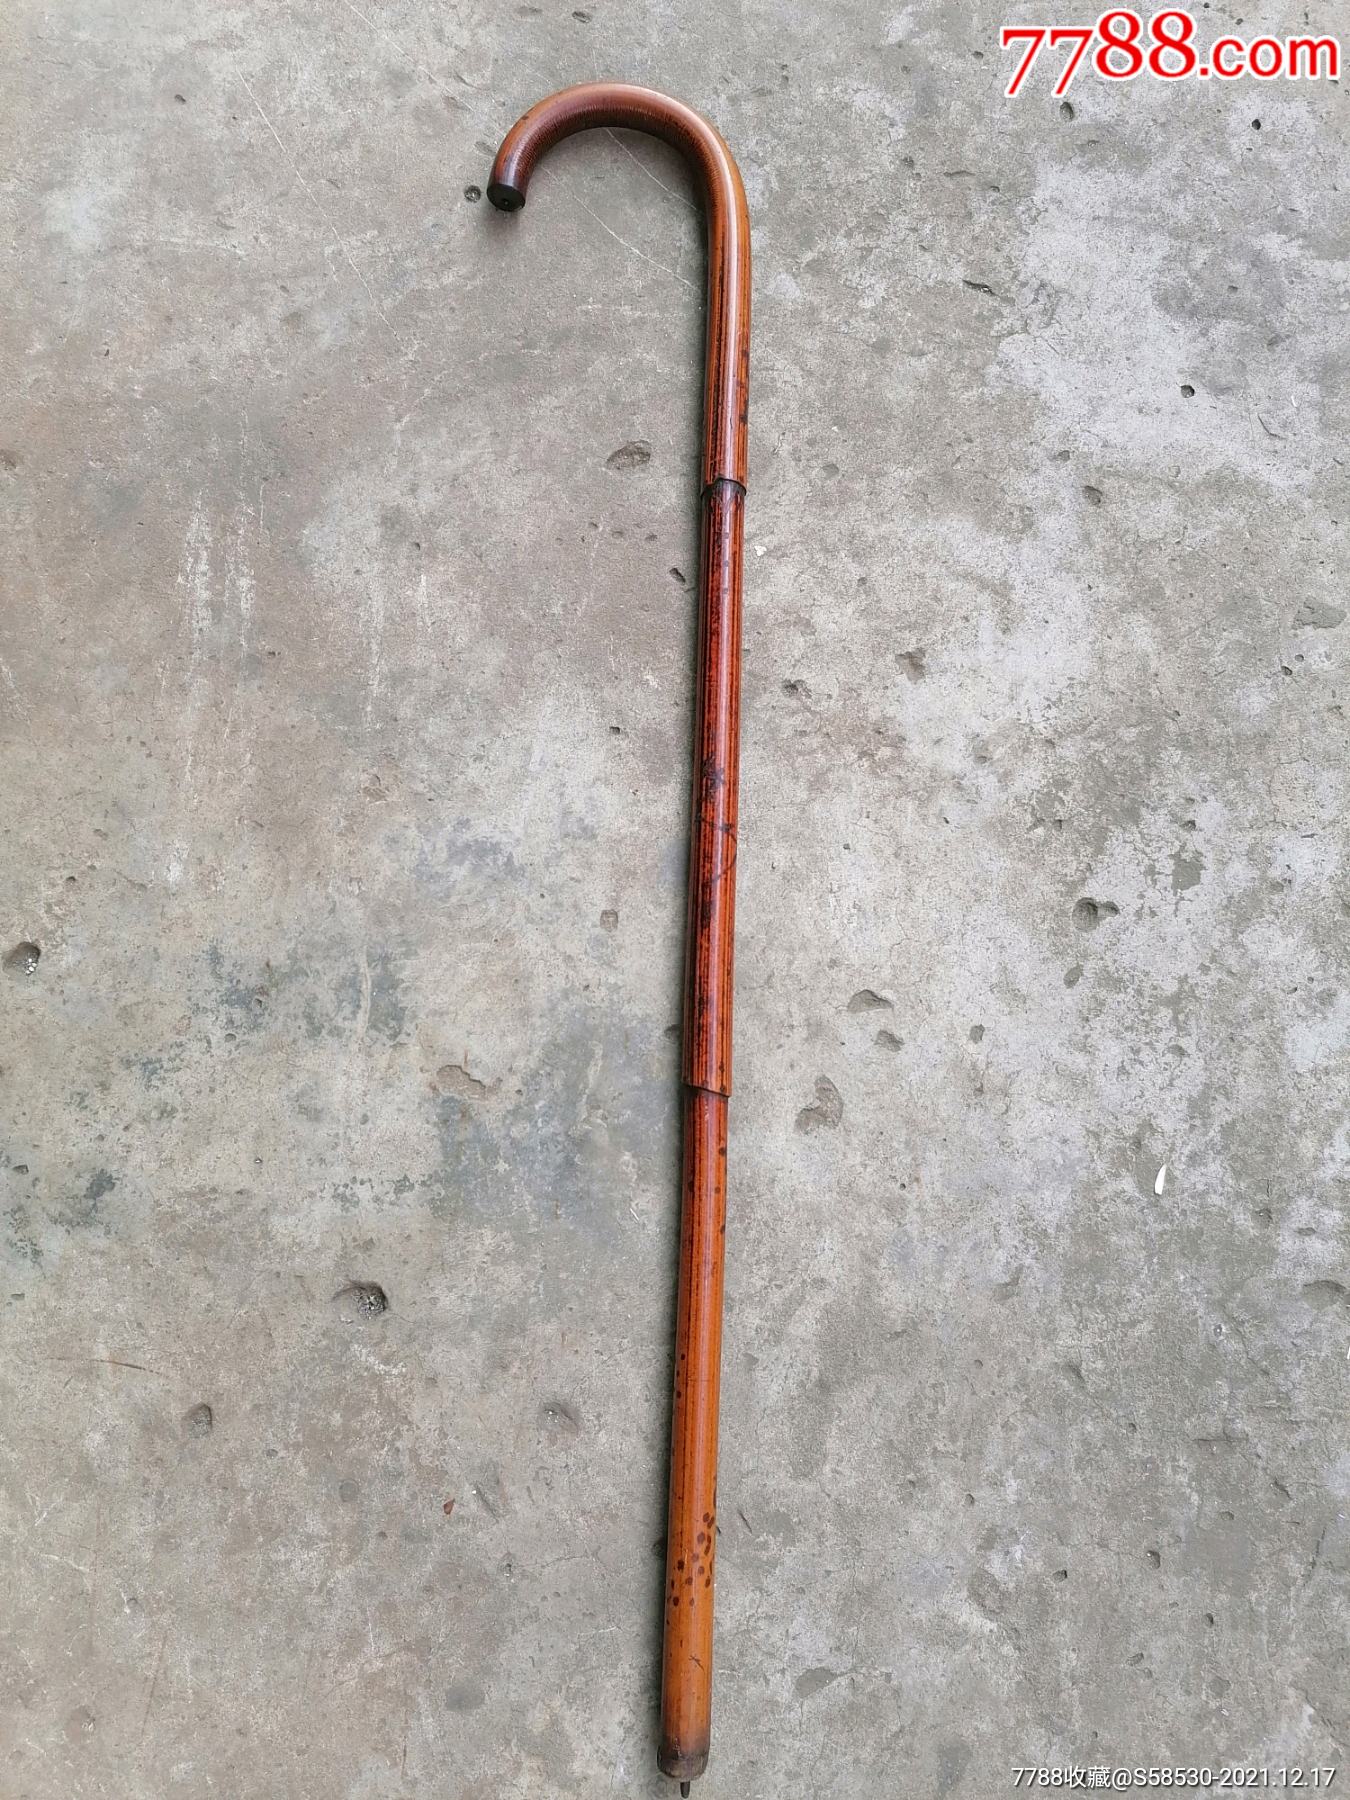 黑藤拐杖 花藤木杖 藤条拐杖 老人助行器木质拐杖旅游景区-阿里巴巴